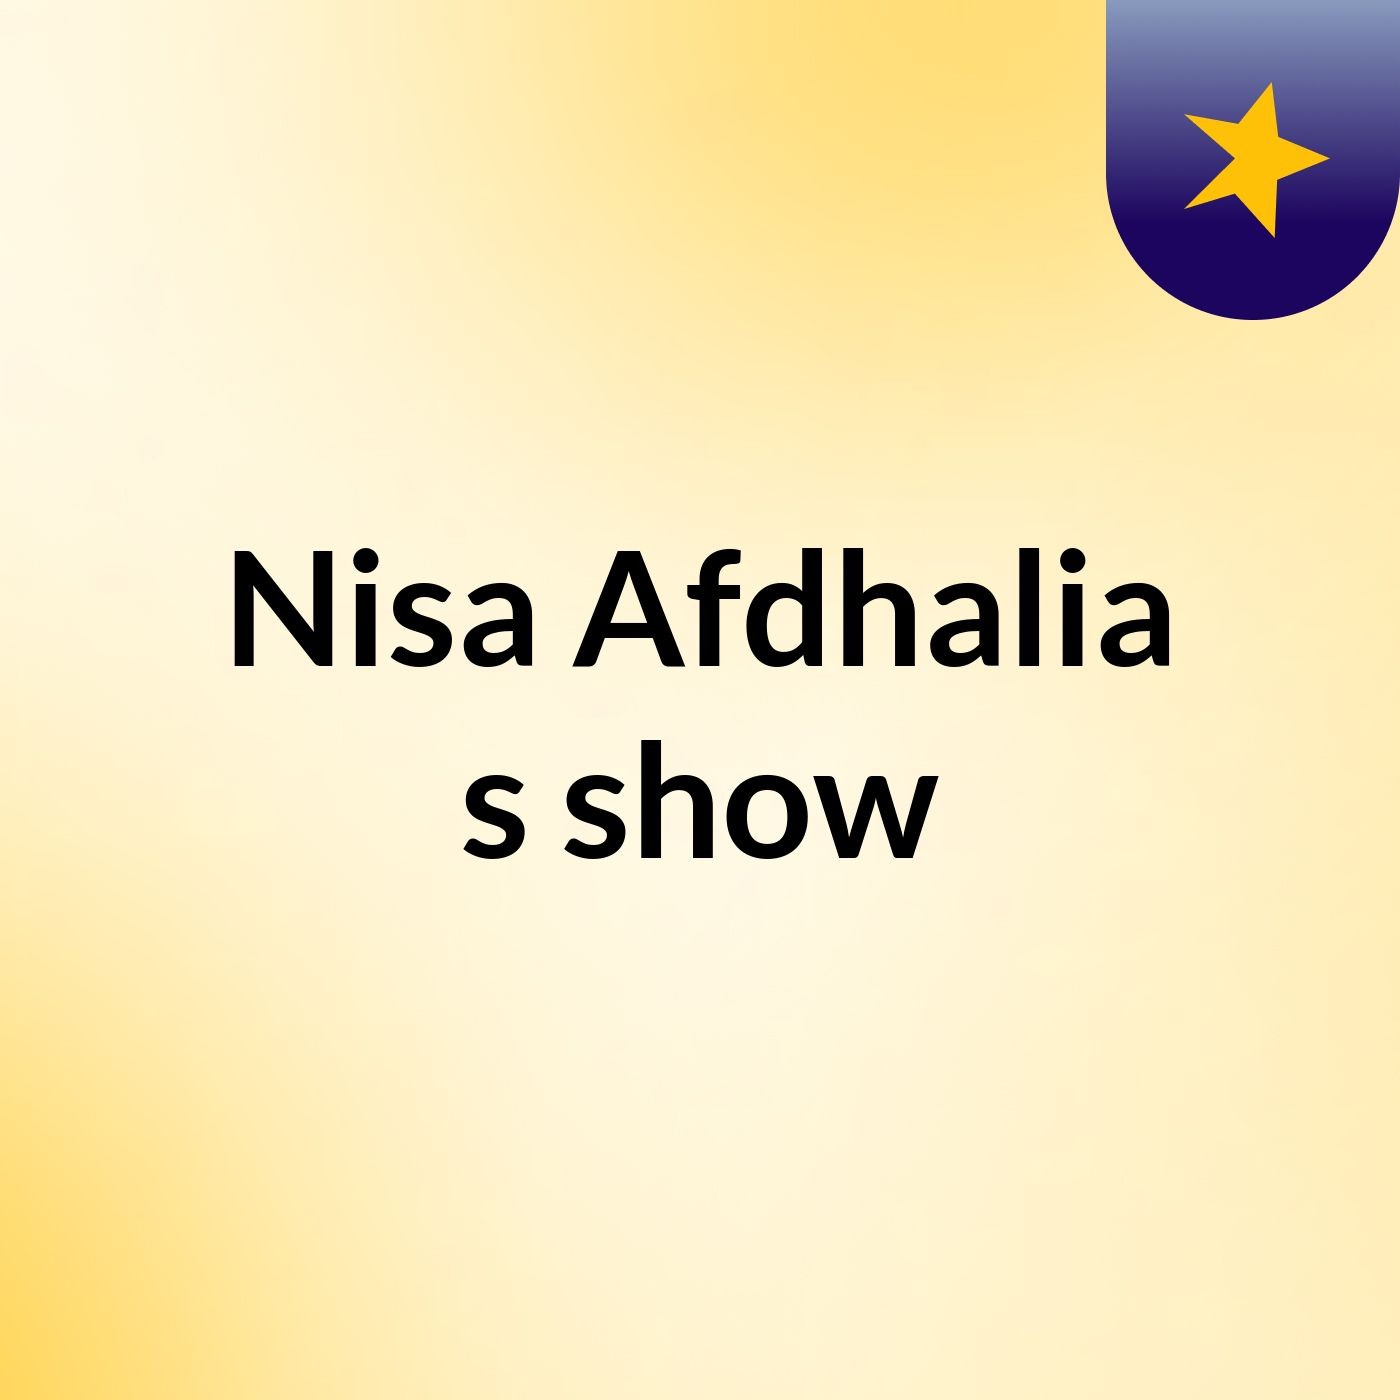 Nisa Afdhalia's show